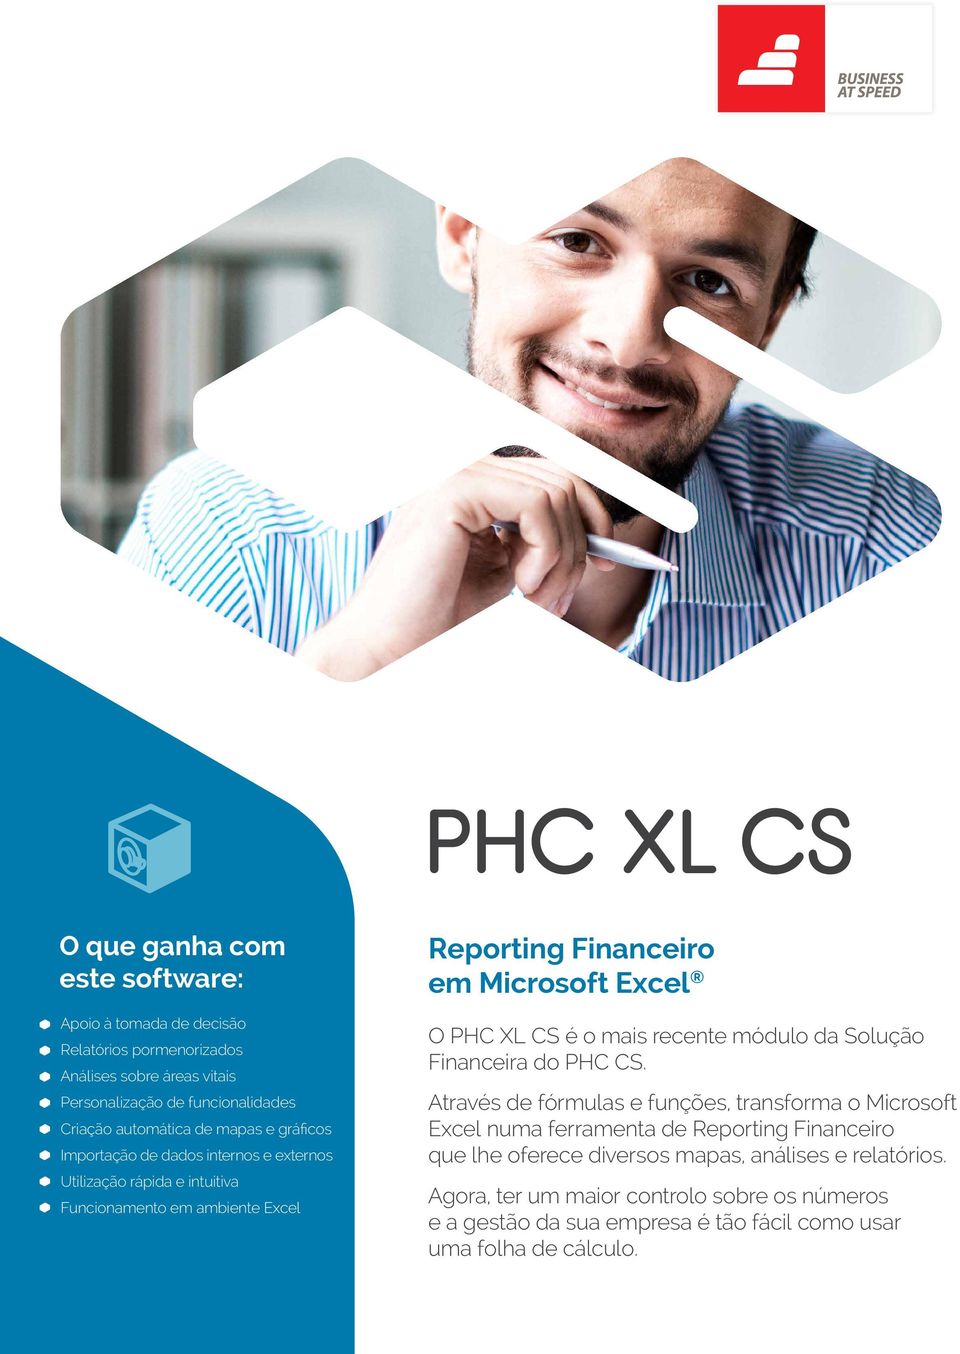 Excel O PHC XL CS é o mais recente módulo da Solução Financeira do PHC CS.